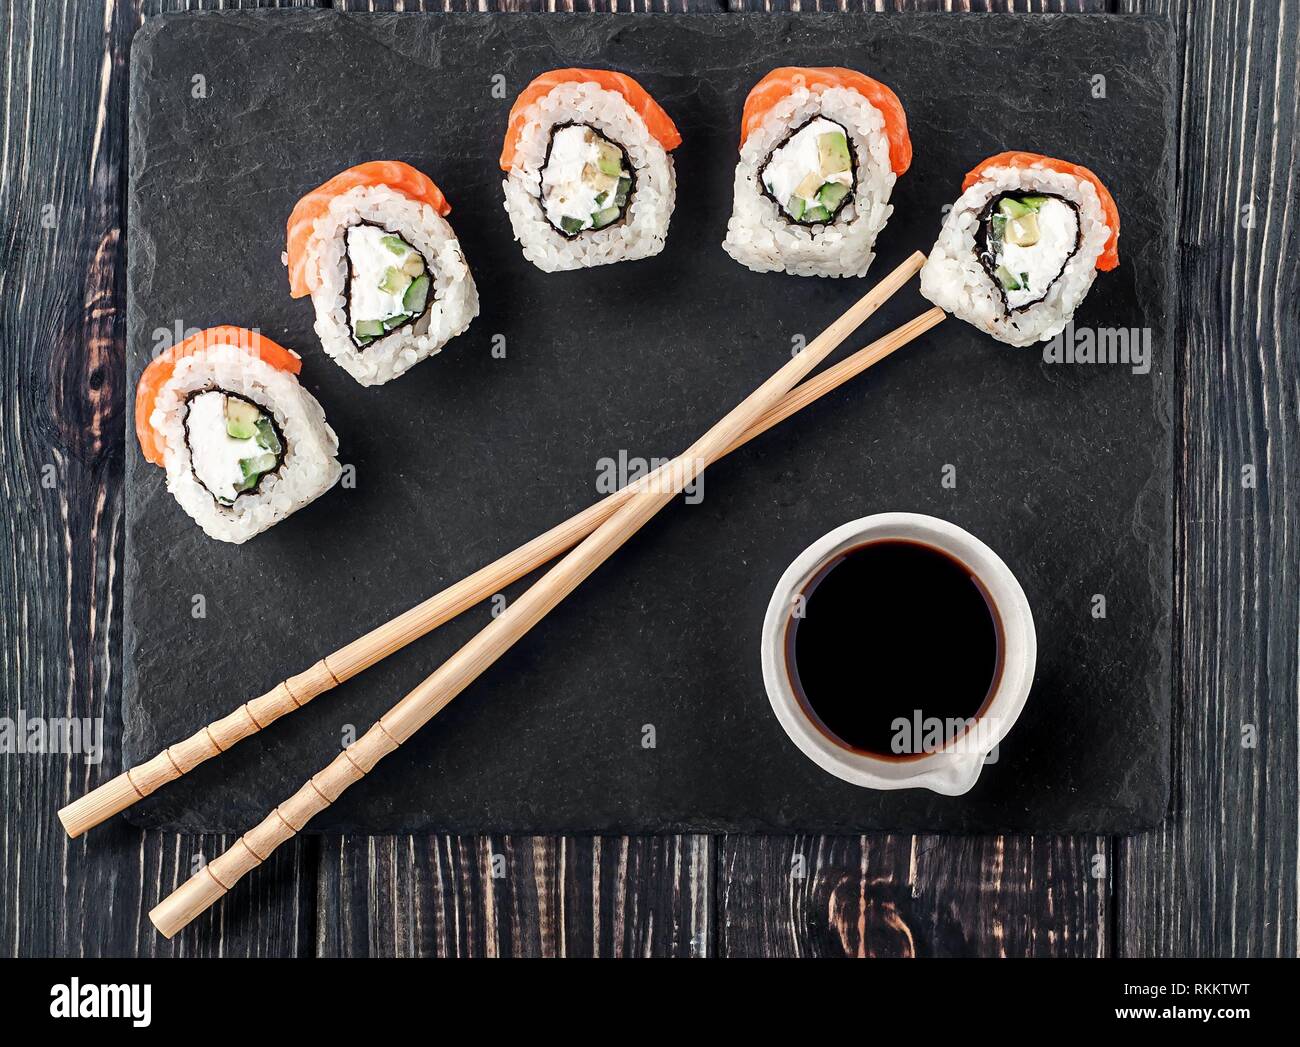 Philadelphia Sushi Roll auf schiefer Stein. Stäbchen mit Sojasauce in der  Nähe. Ansicht von oben Stockfotografie - Alamy